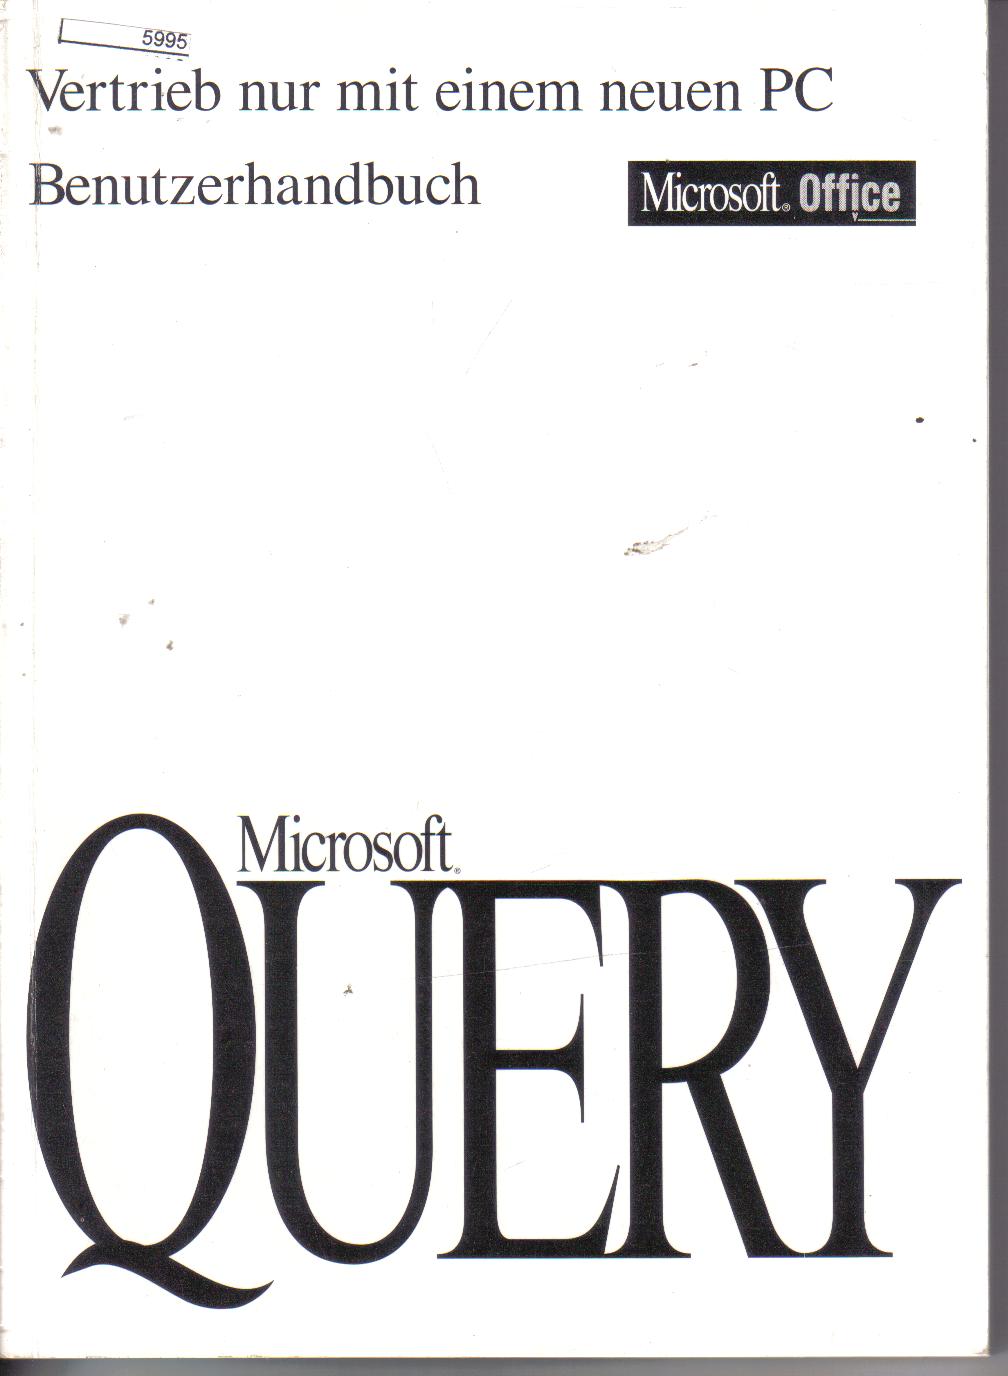 Microsoft  QUERY  Benutzerhandbuch